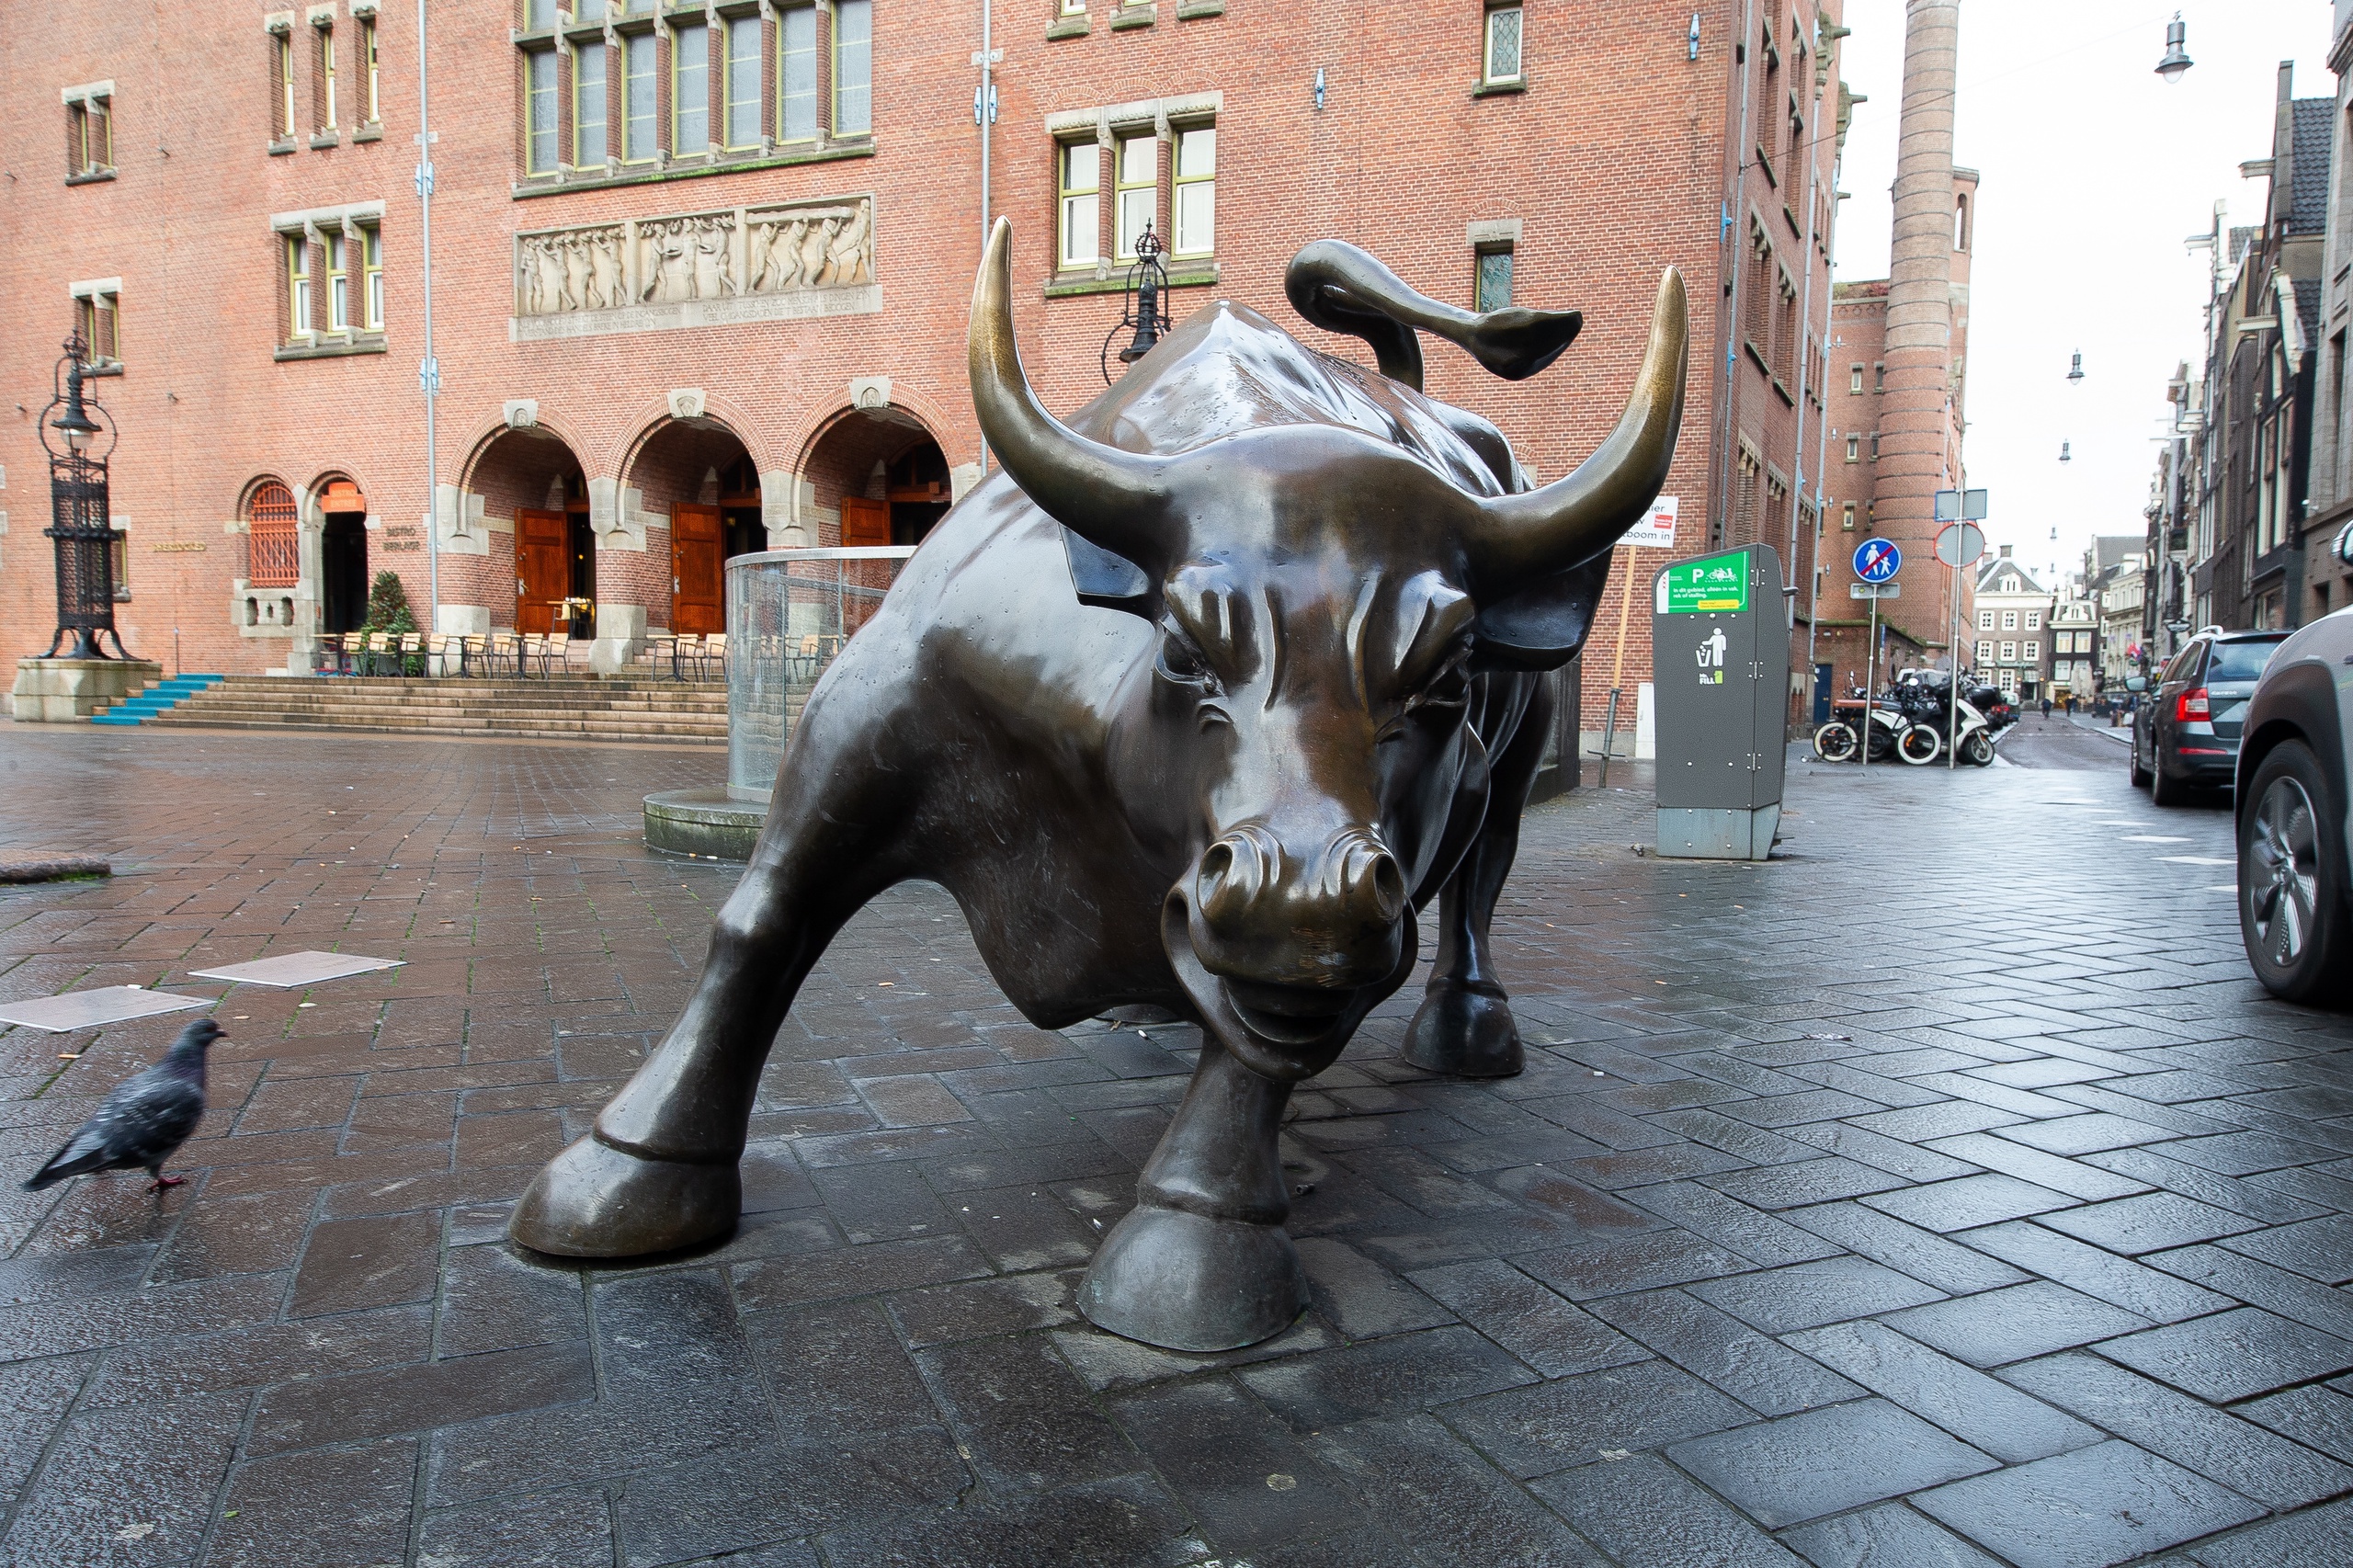 Telecombedrijf KPN stond vandaag bij de sterkste stijgers in een licht hoger gesloten AEX-index van de aandelenbeurs in Amsterdam.